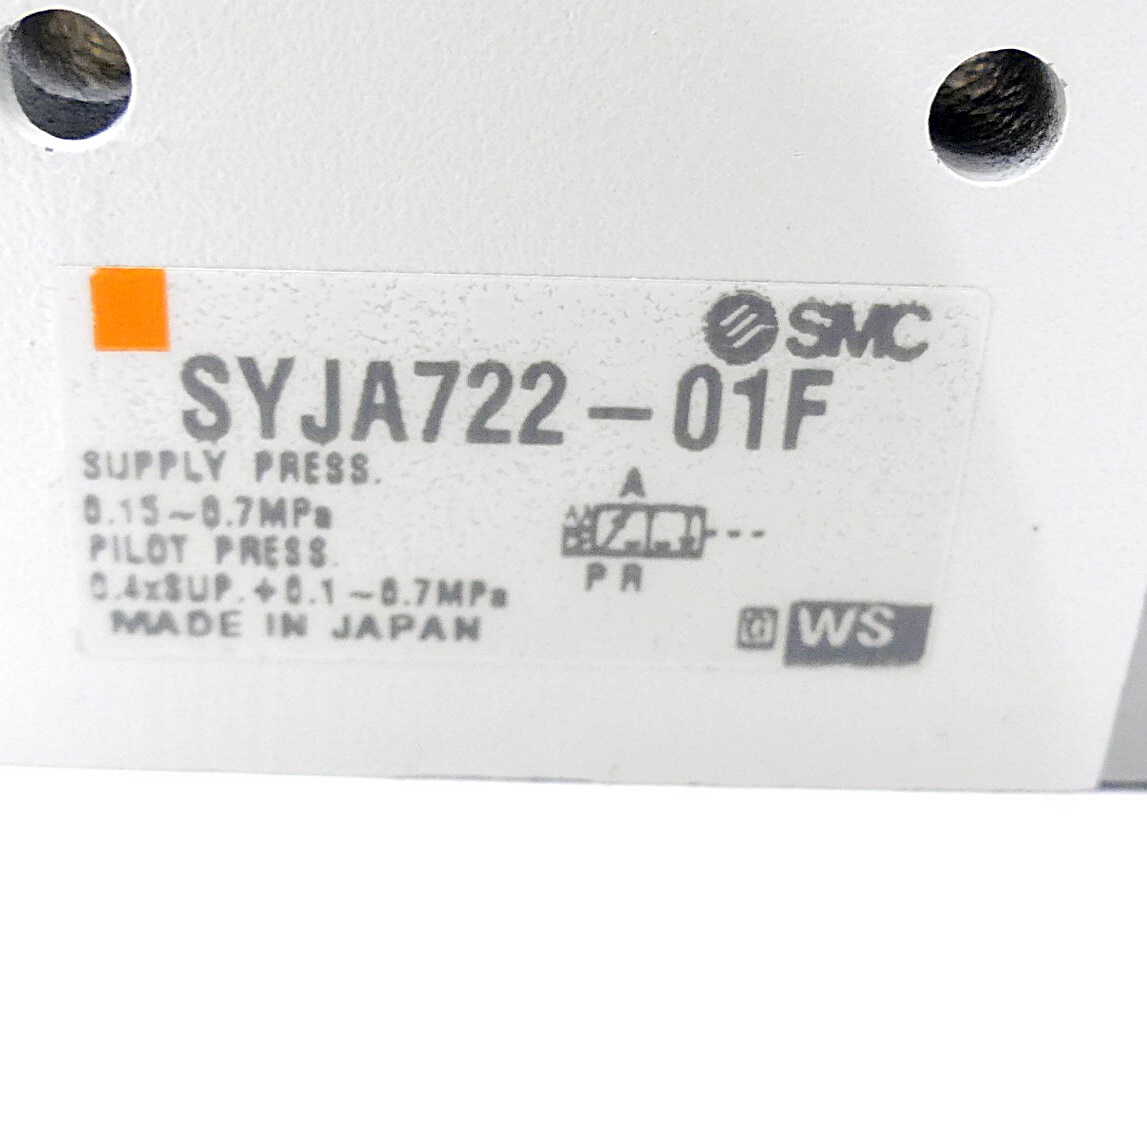 3-Port Air Operated Valve, SYJA722-01F 